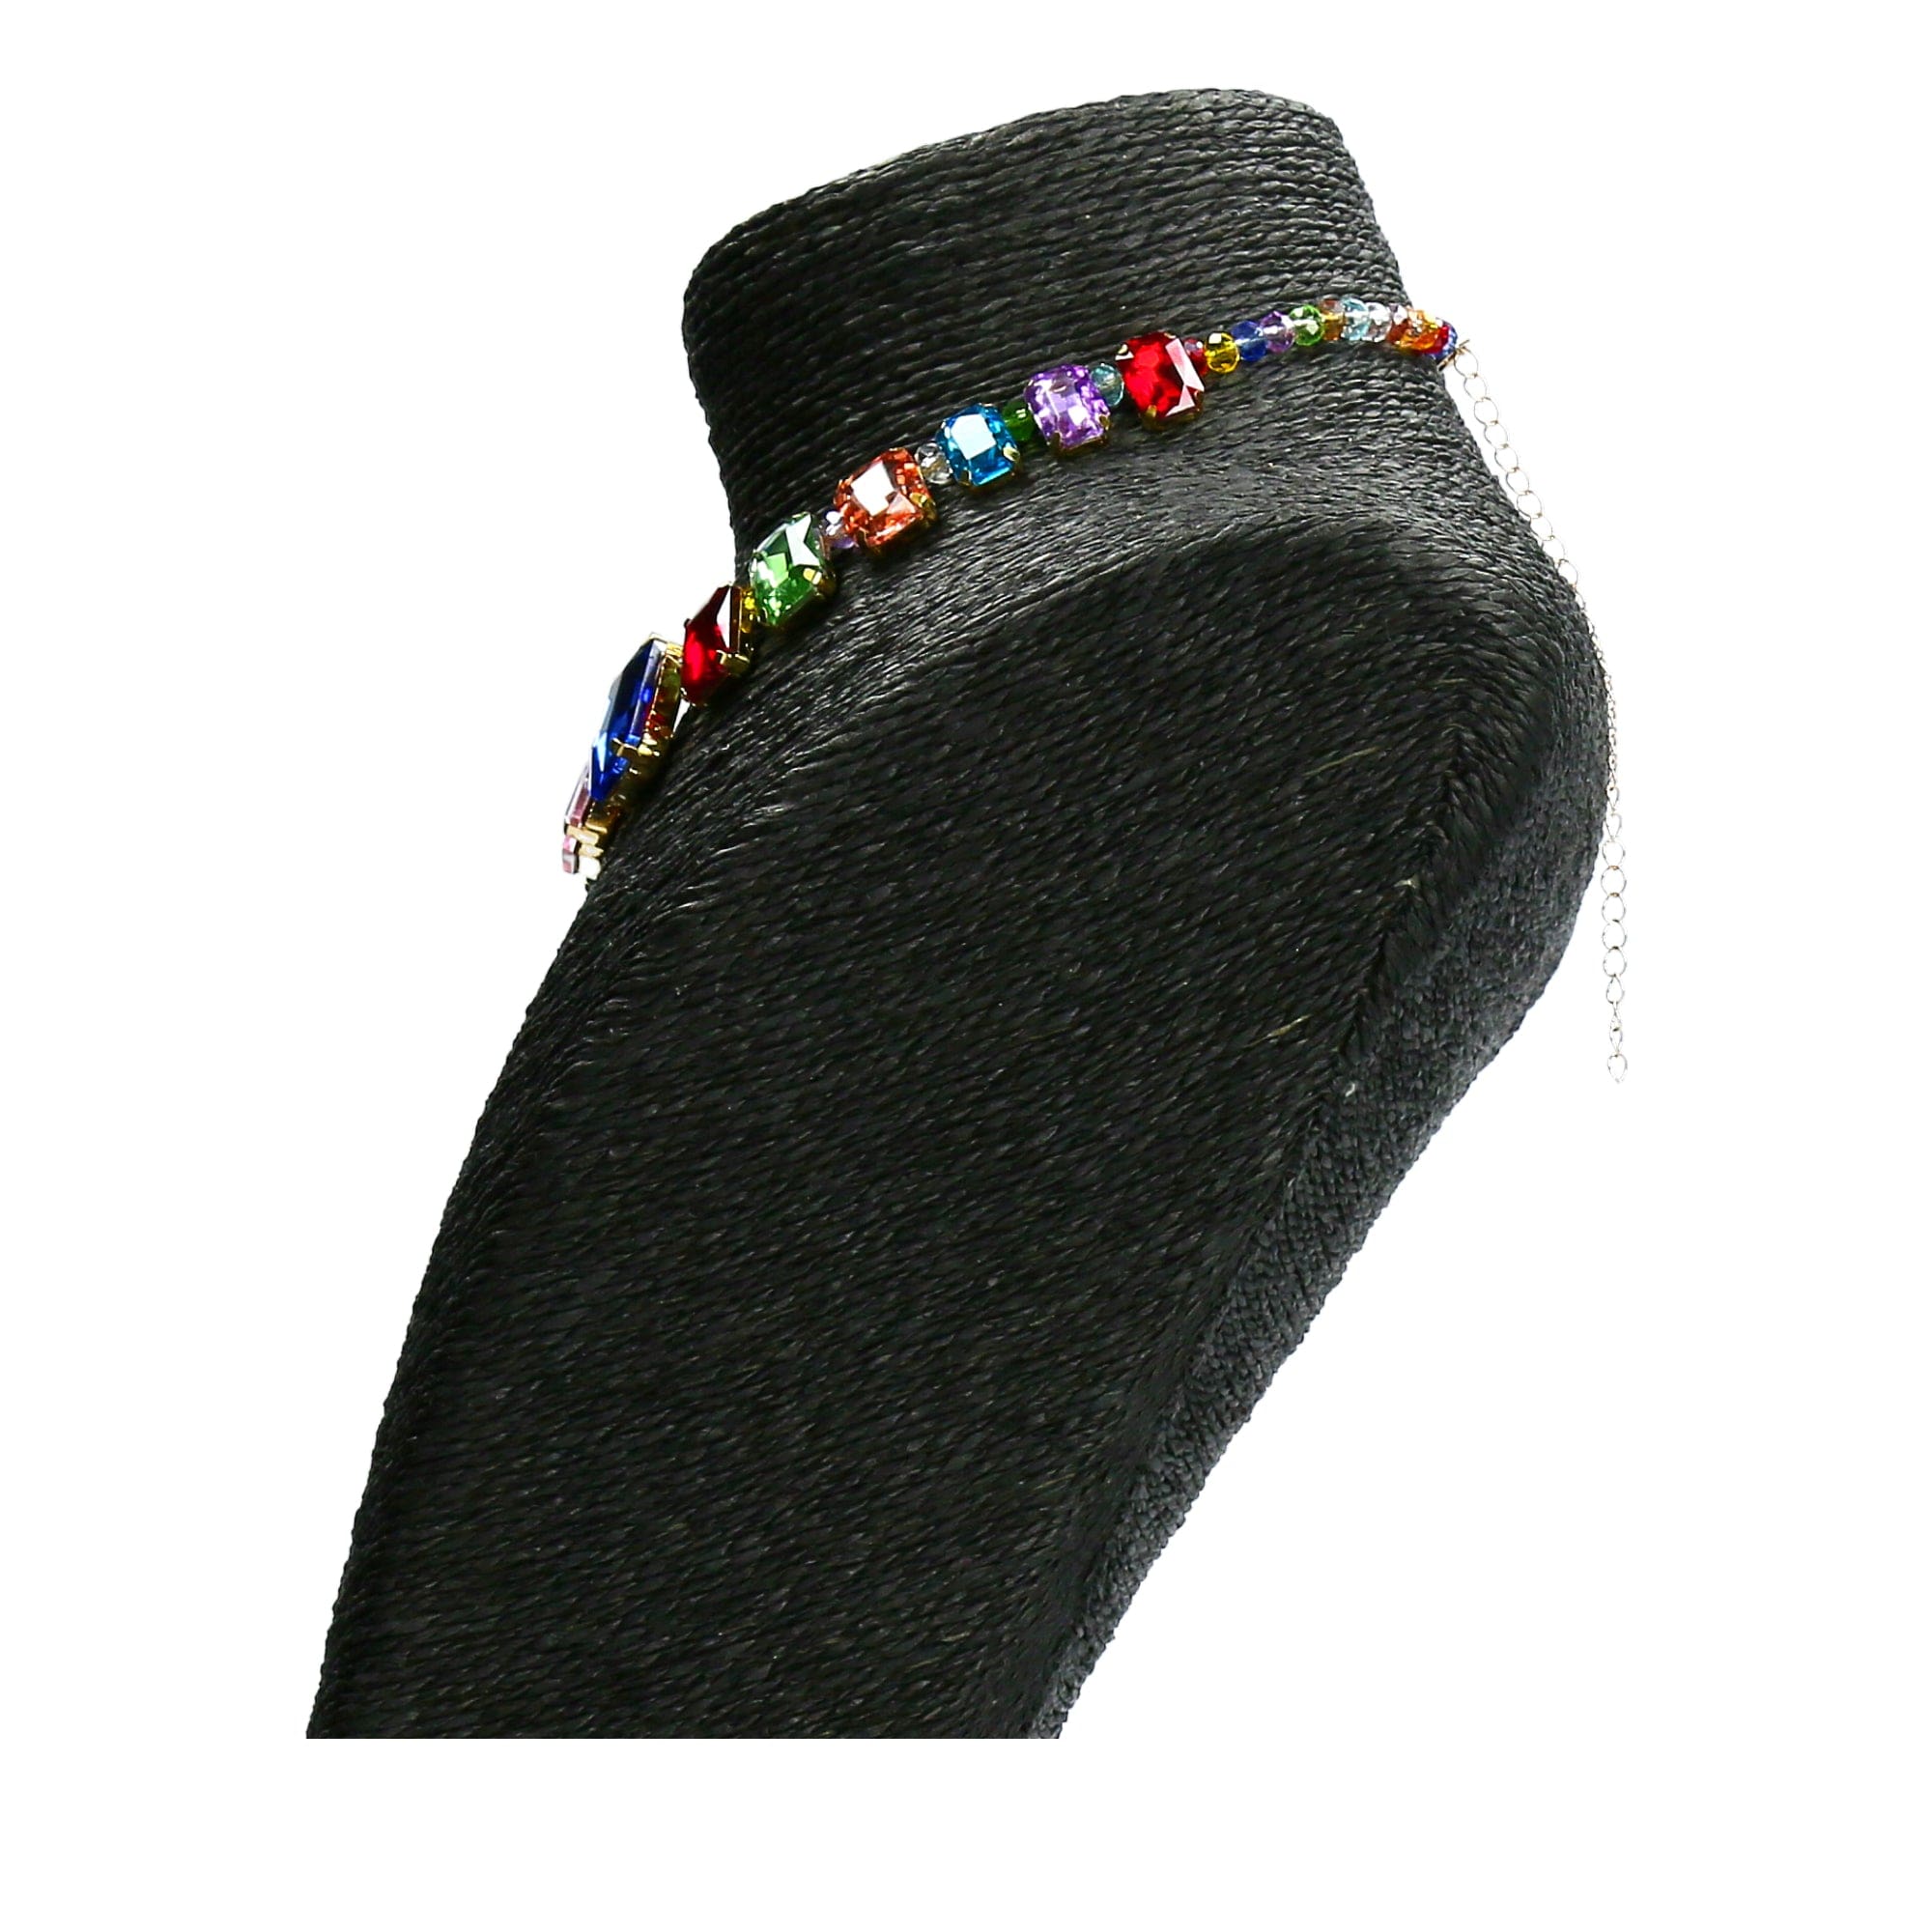 Bianca jewellery kaulakoru - Kaulakoru - Necklace